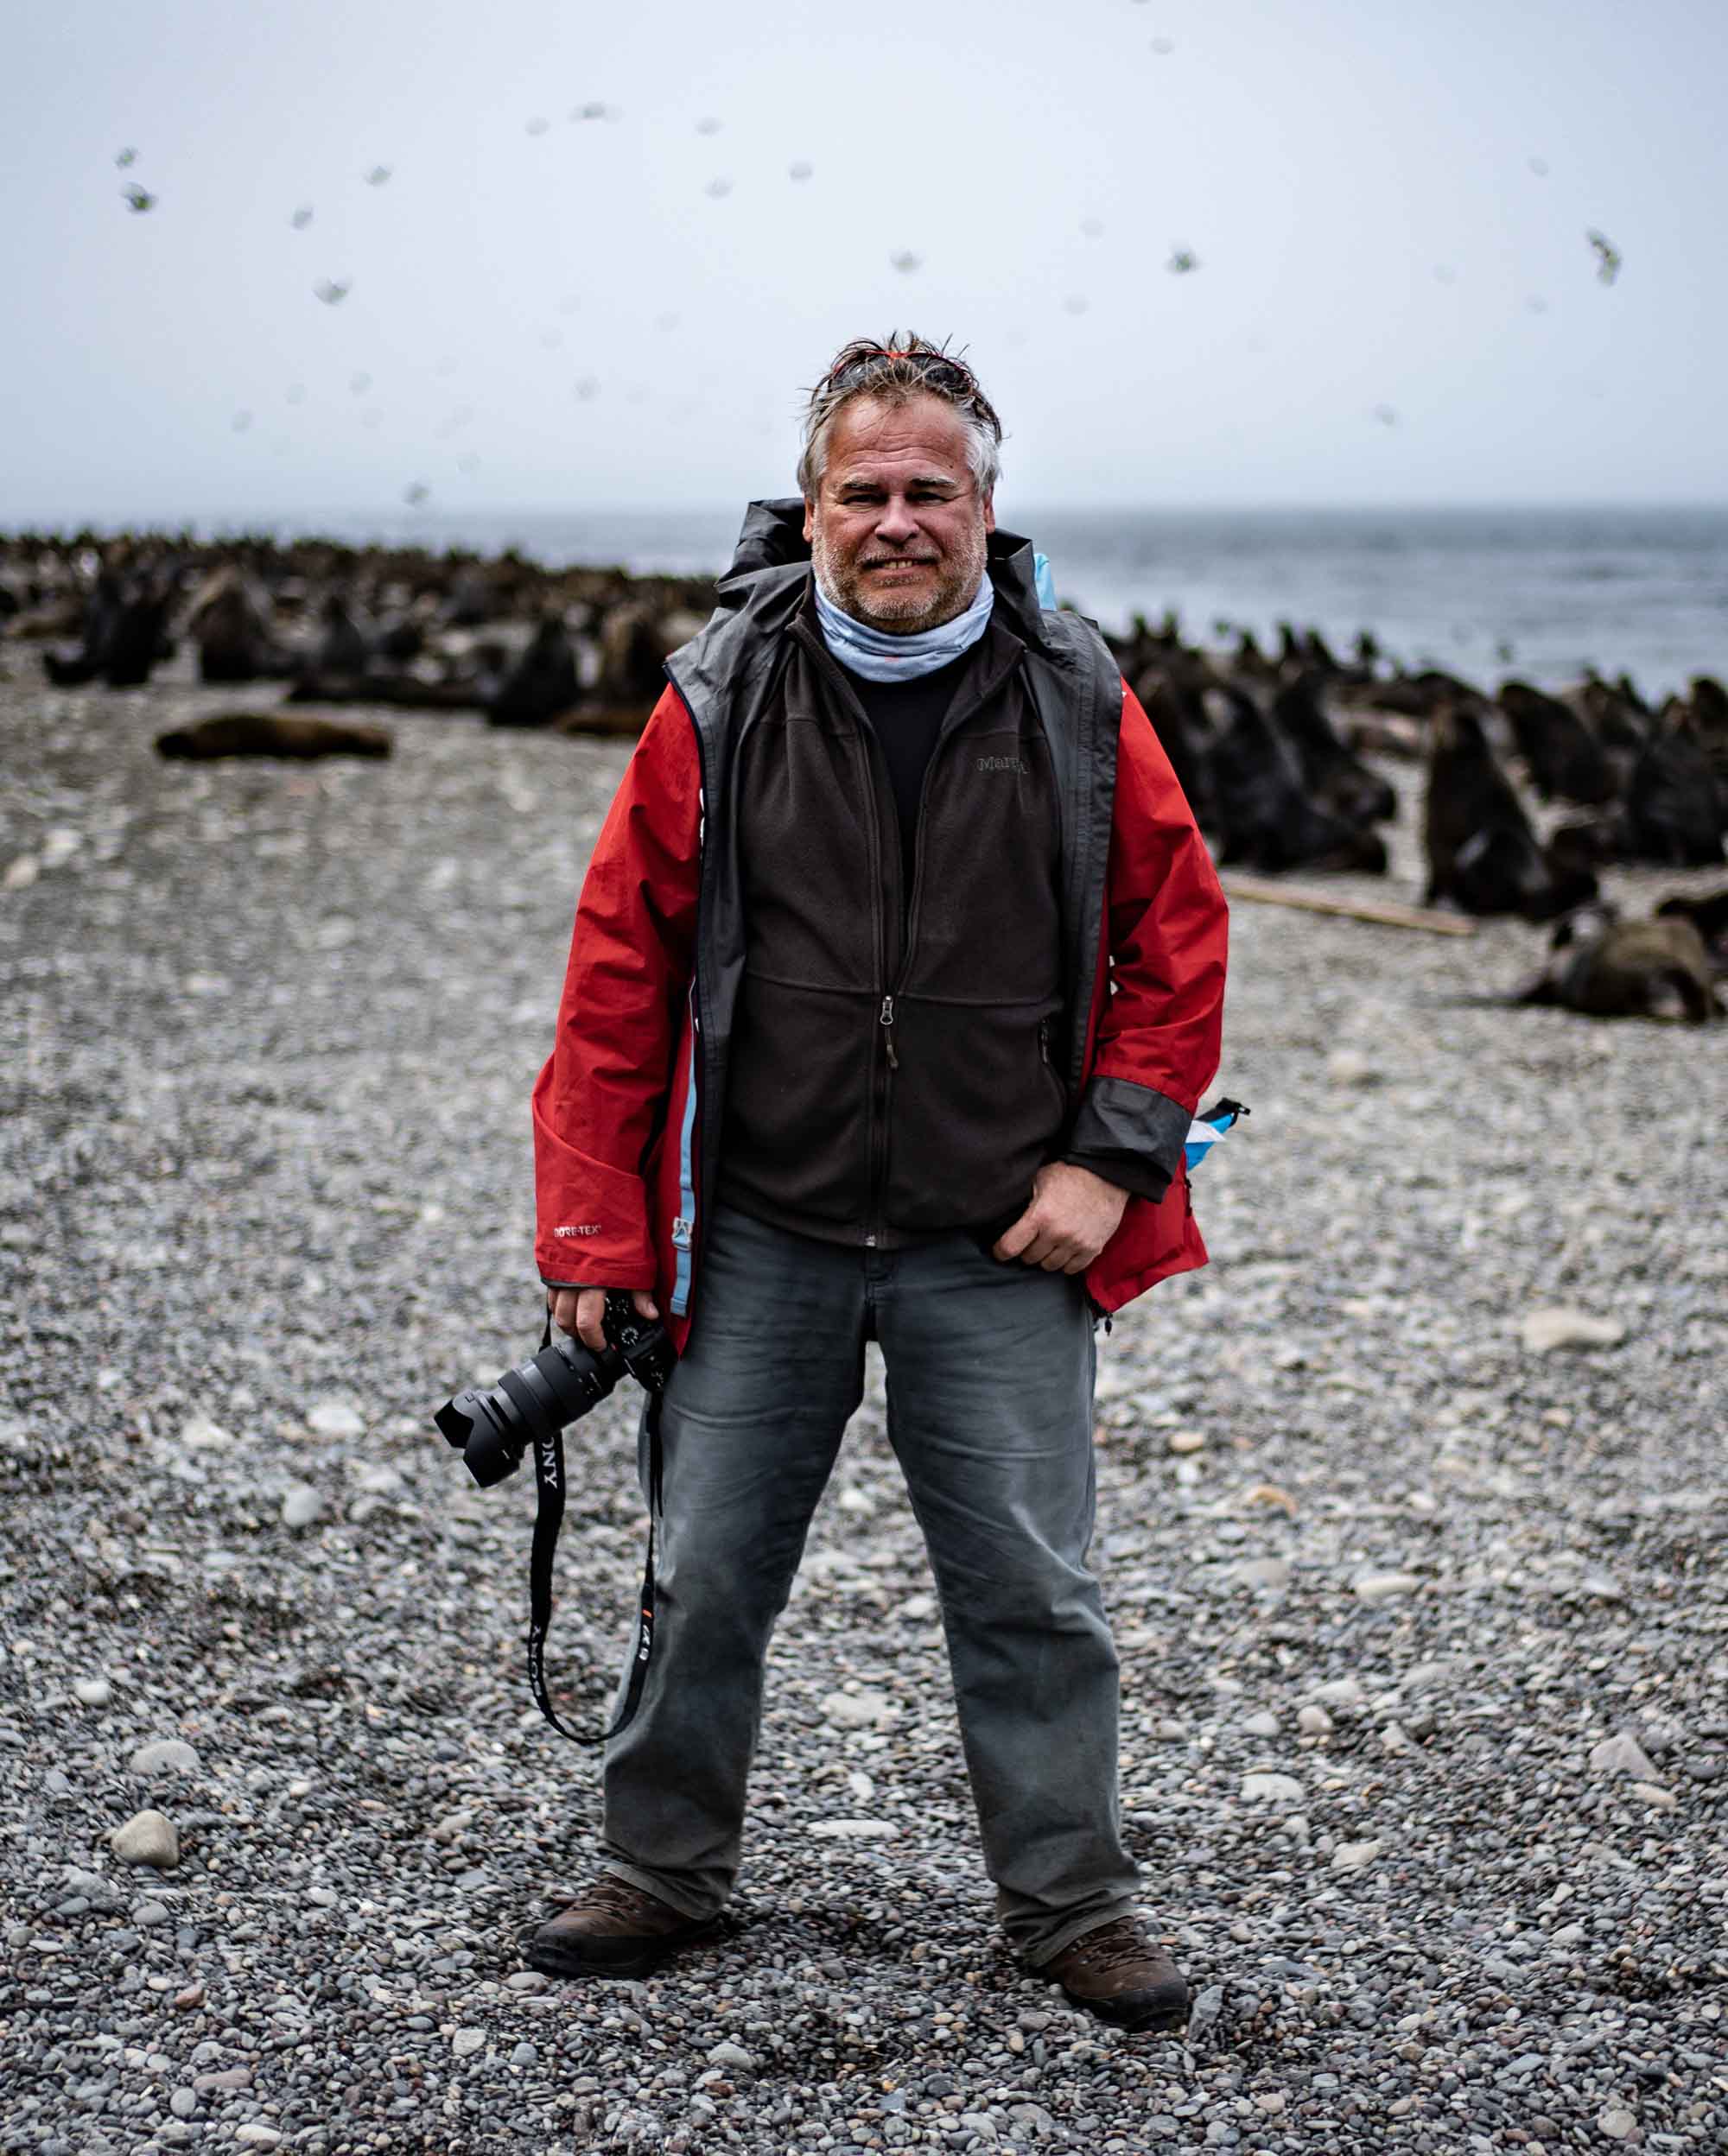 Kaspersky phát hành phim tài liệu “From Kurils With Love” nhằm nâng cao nhận thức bảo vệ hệ sinh thái Quần đảo Kuril